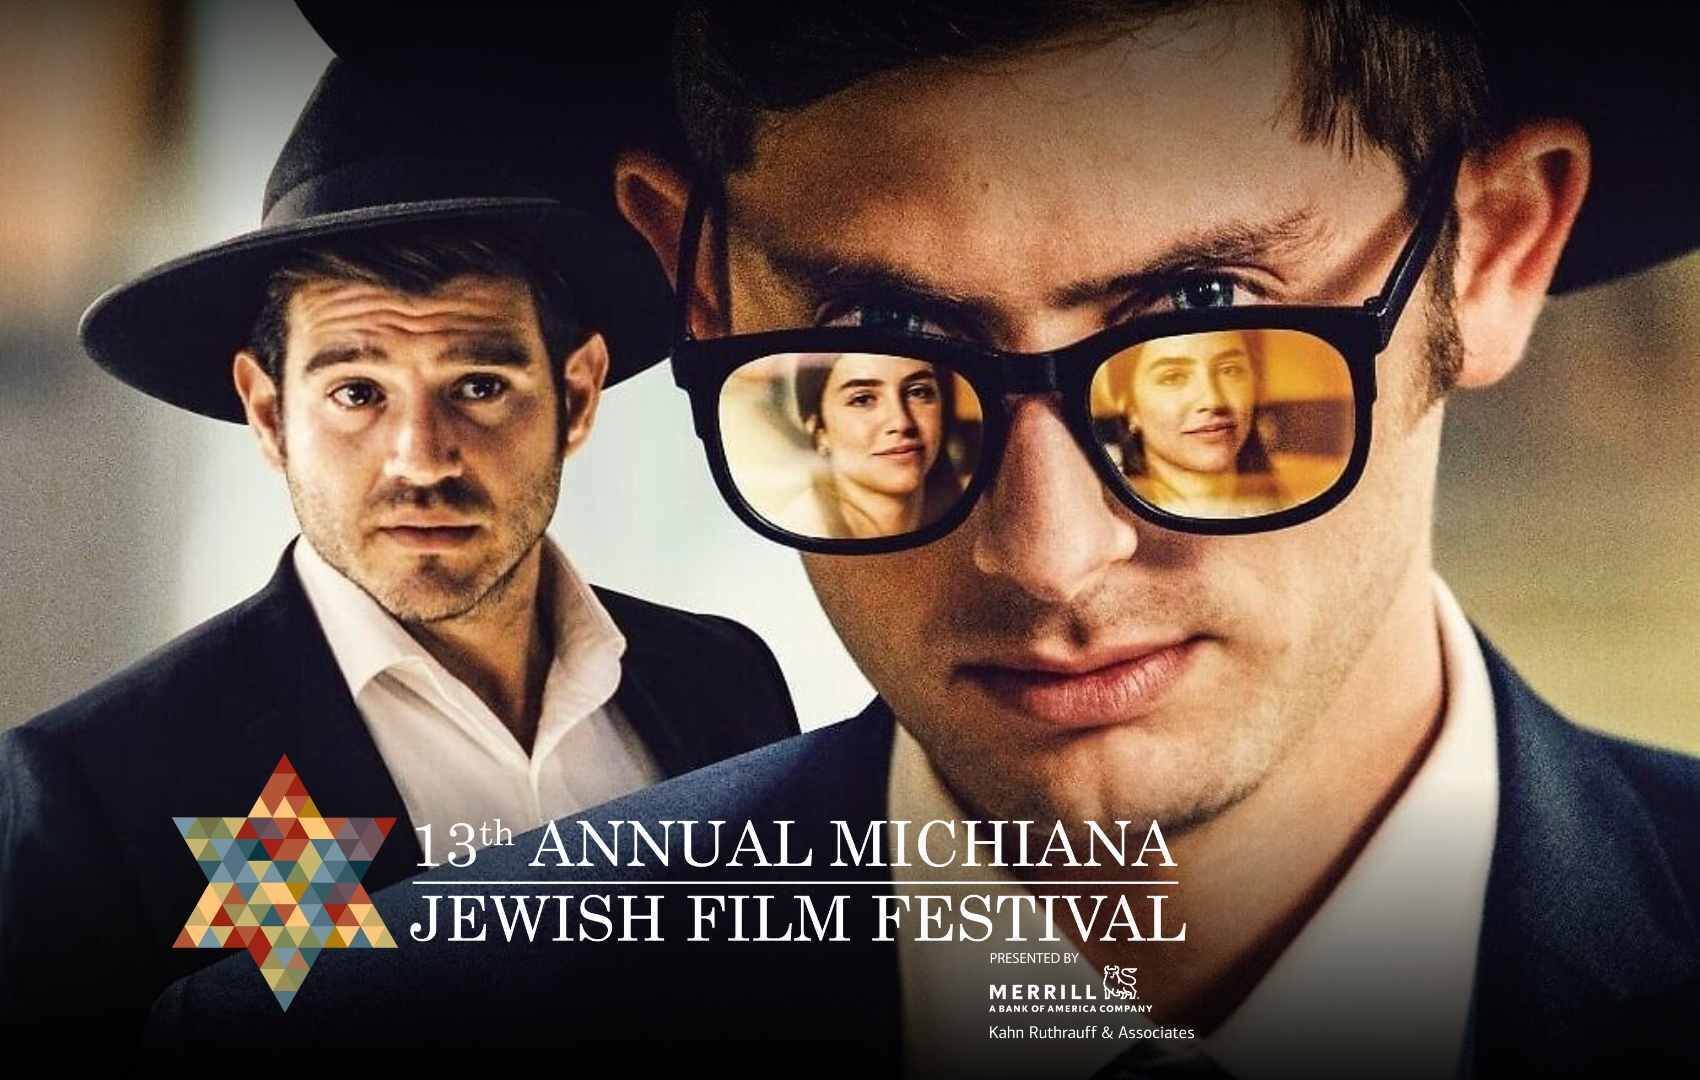 Complete Guide to the Michiana Jewish Film Festival